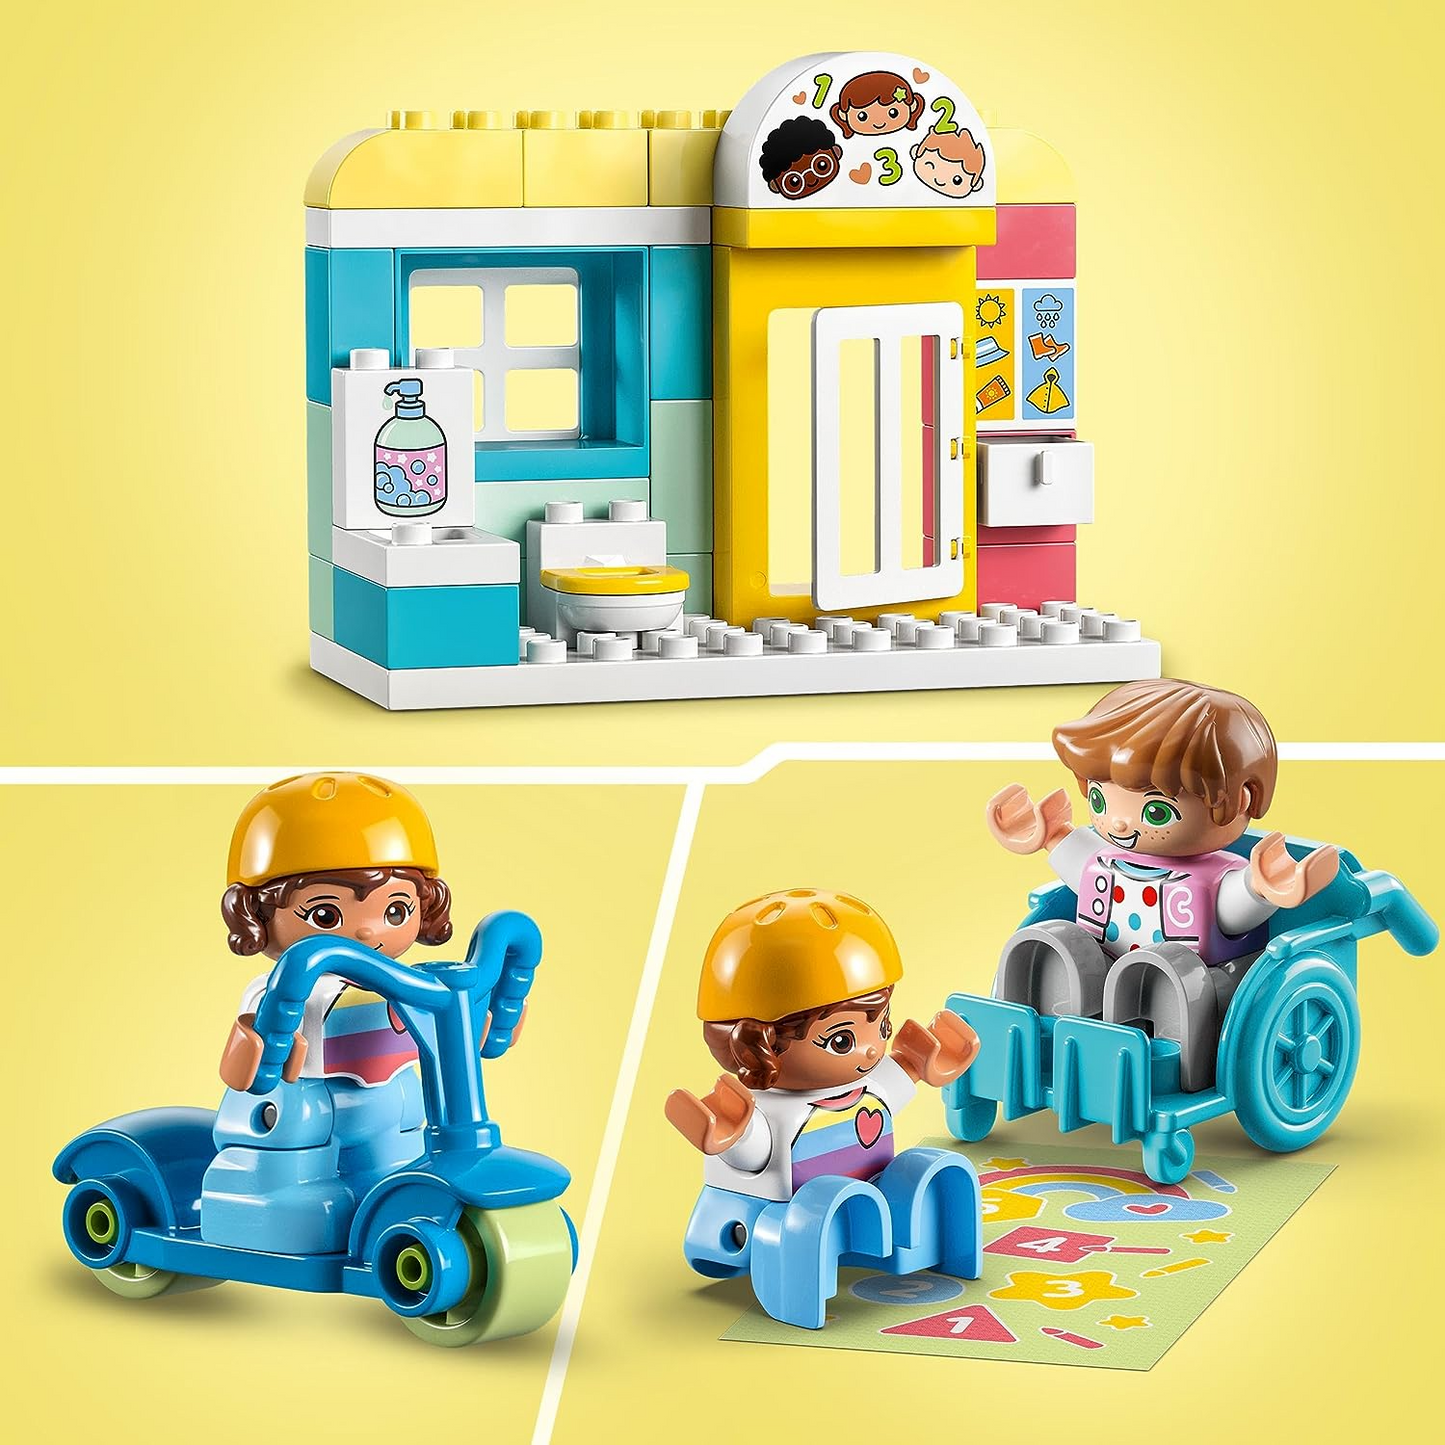 LEGO 10992 DUPLO Town Life no berçário, brinquedo educativo para crianças de 2 anos ou mais, conjunto de aprendizagem com tijolos de construção e 4 figuras incl. Professor de pré-escola